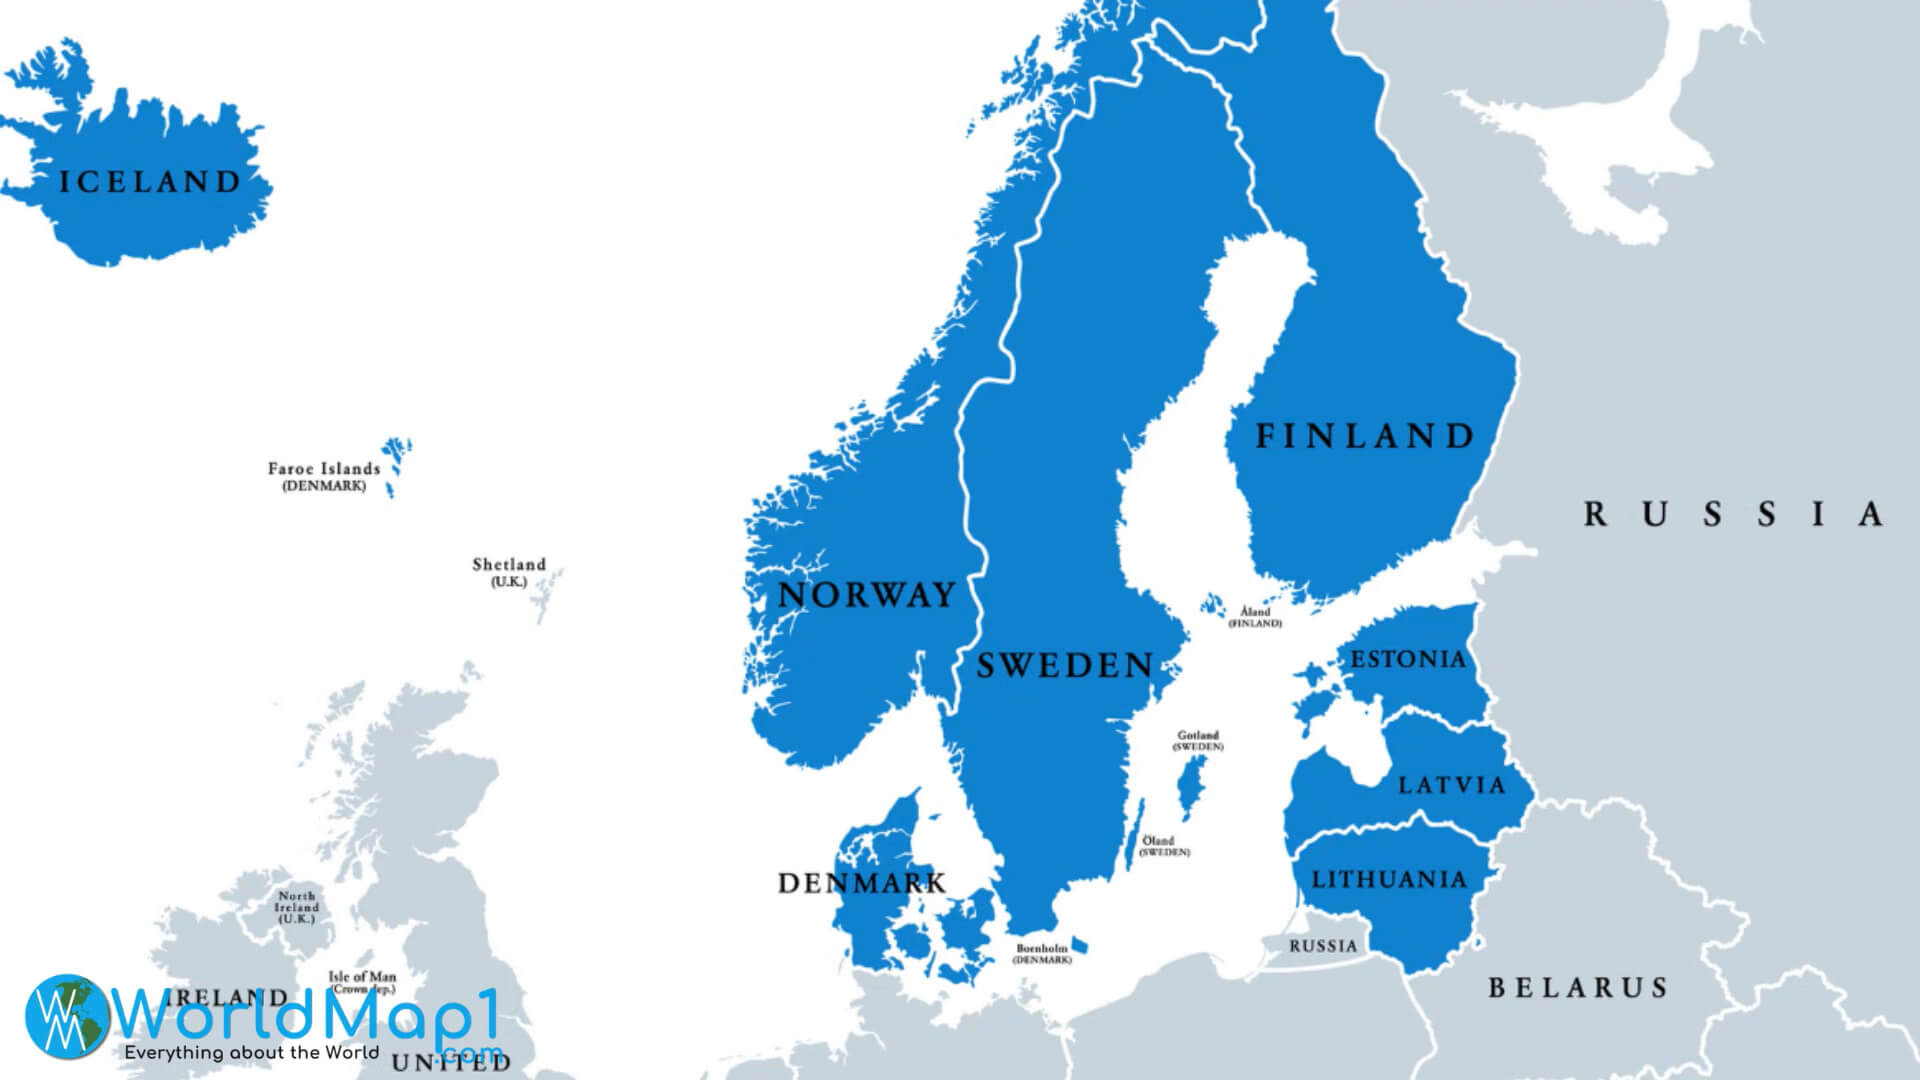 Carte des pays scandinaves et baltes avec la Lettonie